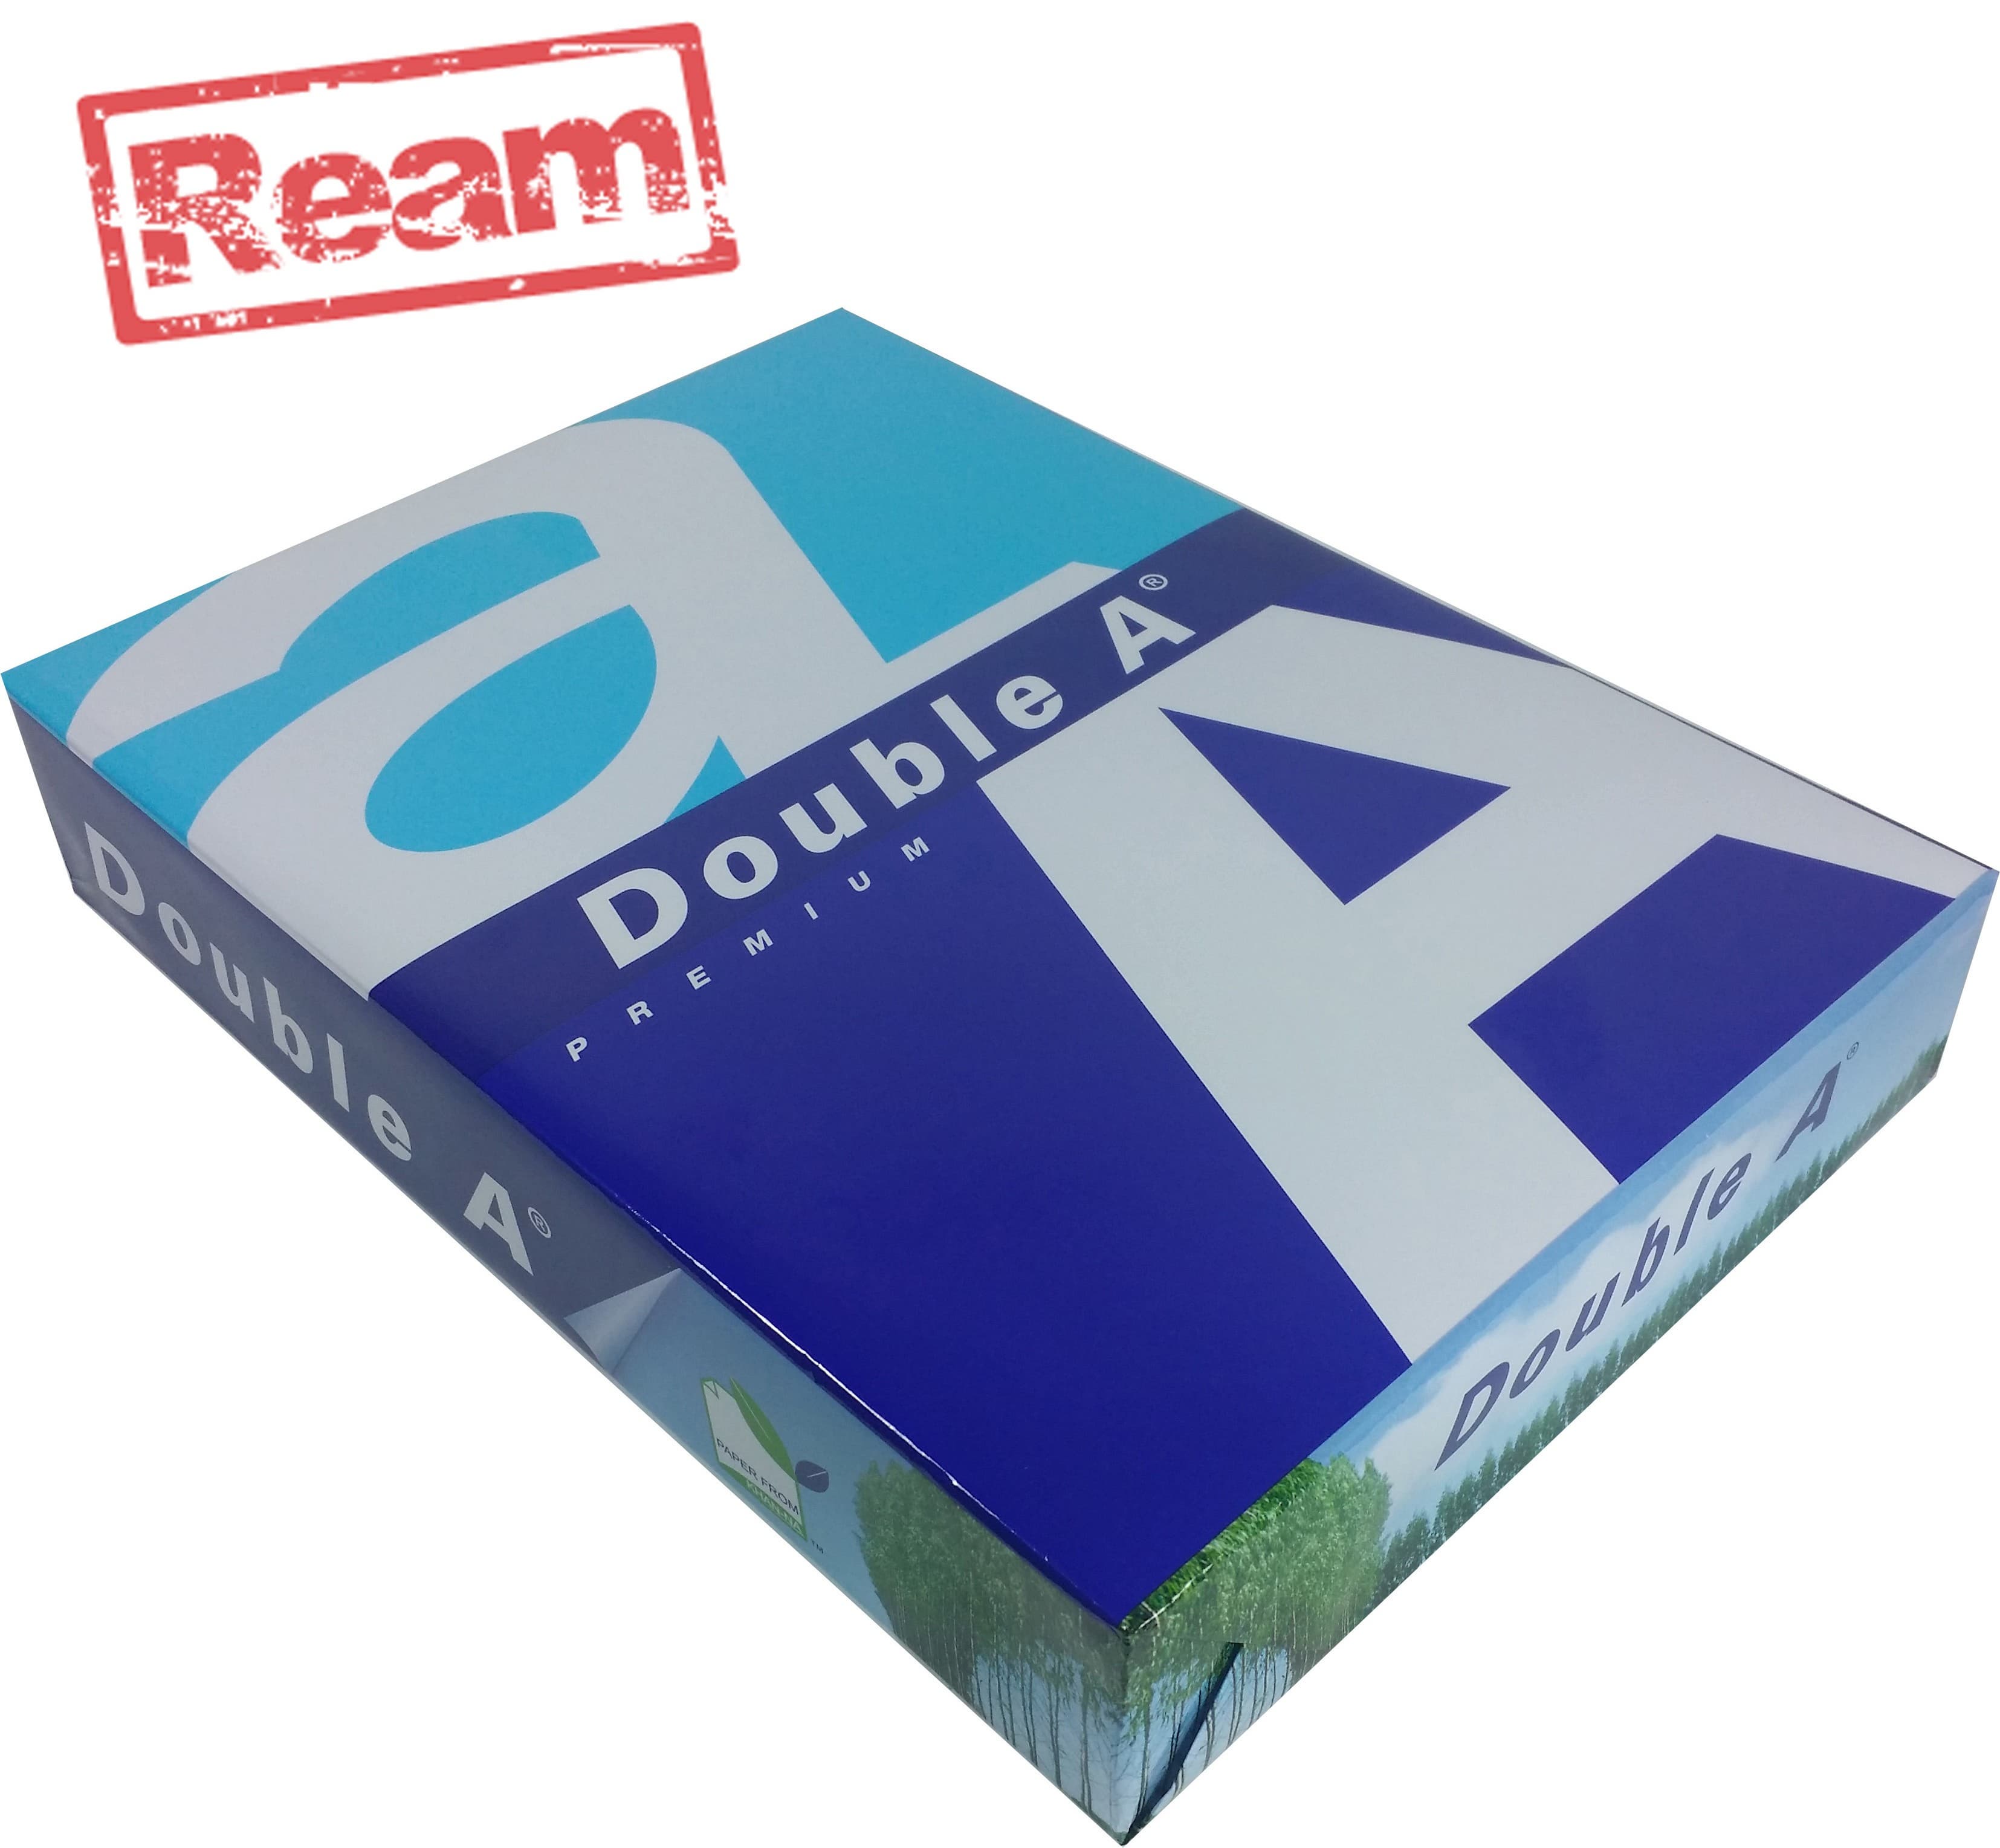 Copier Double A4 Paper 80 gsm -210 X 297 mm-